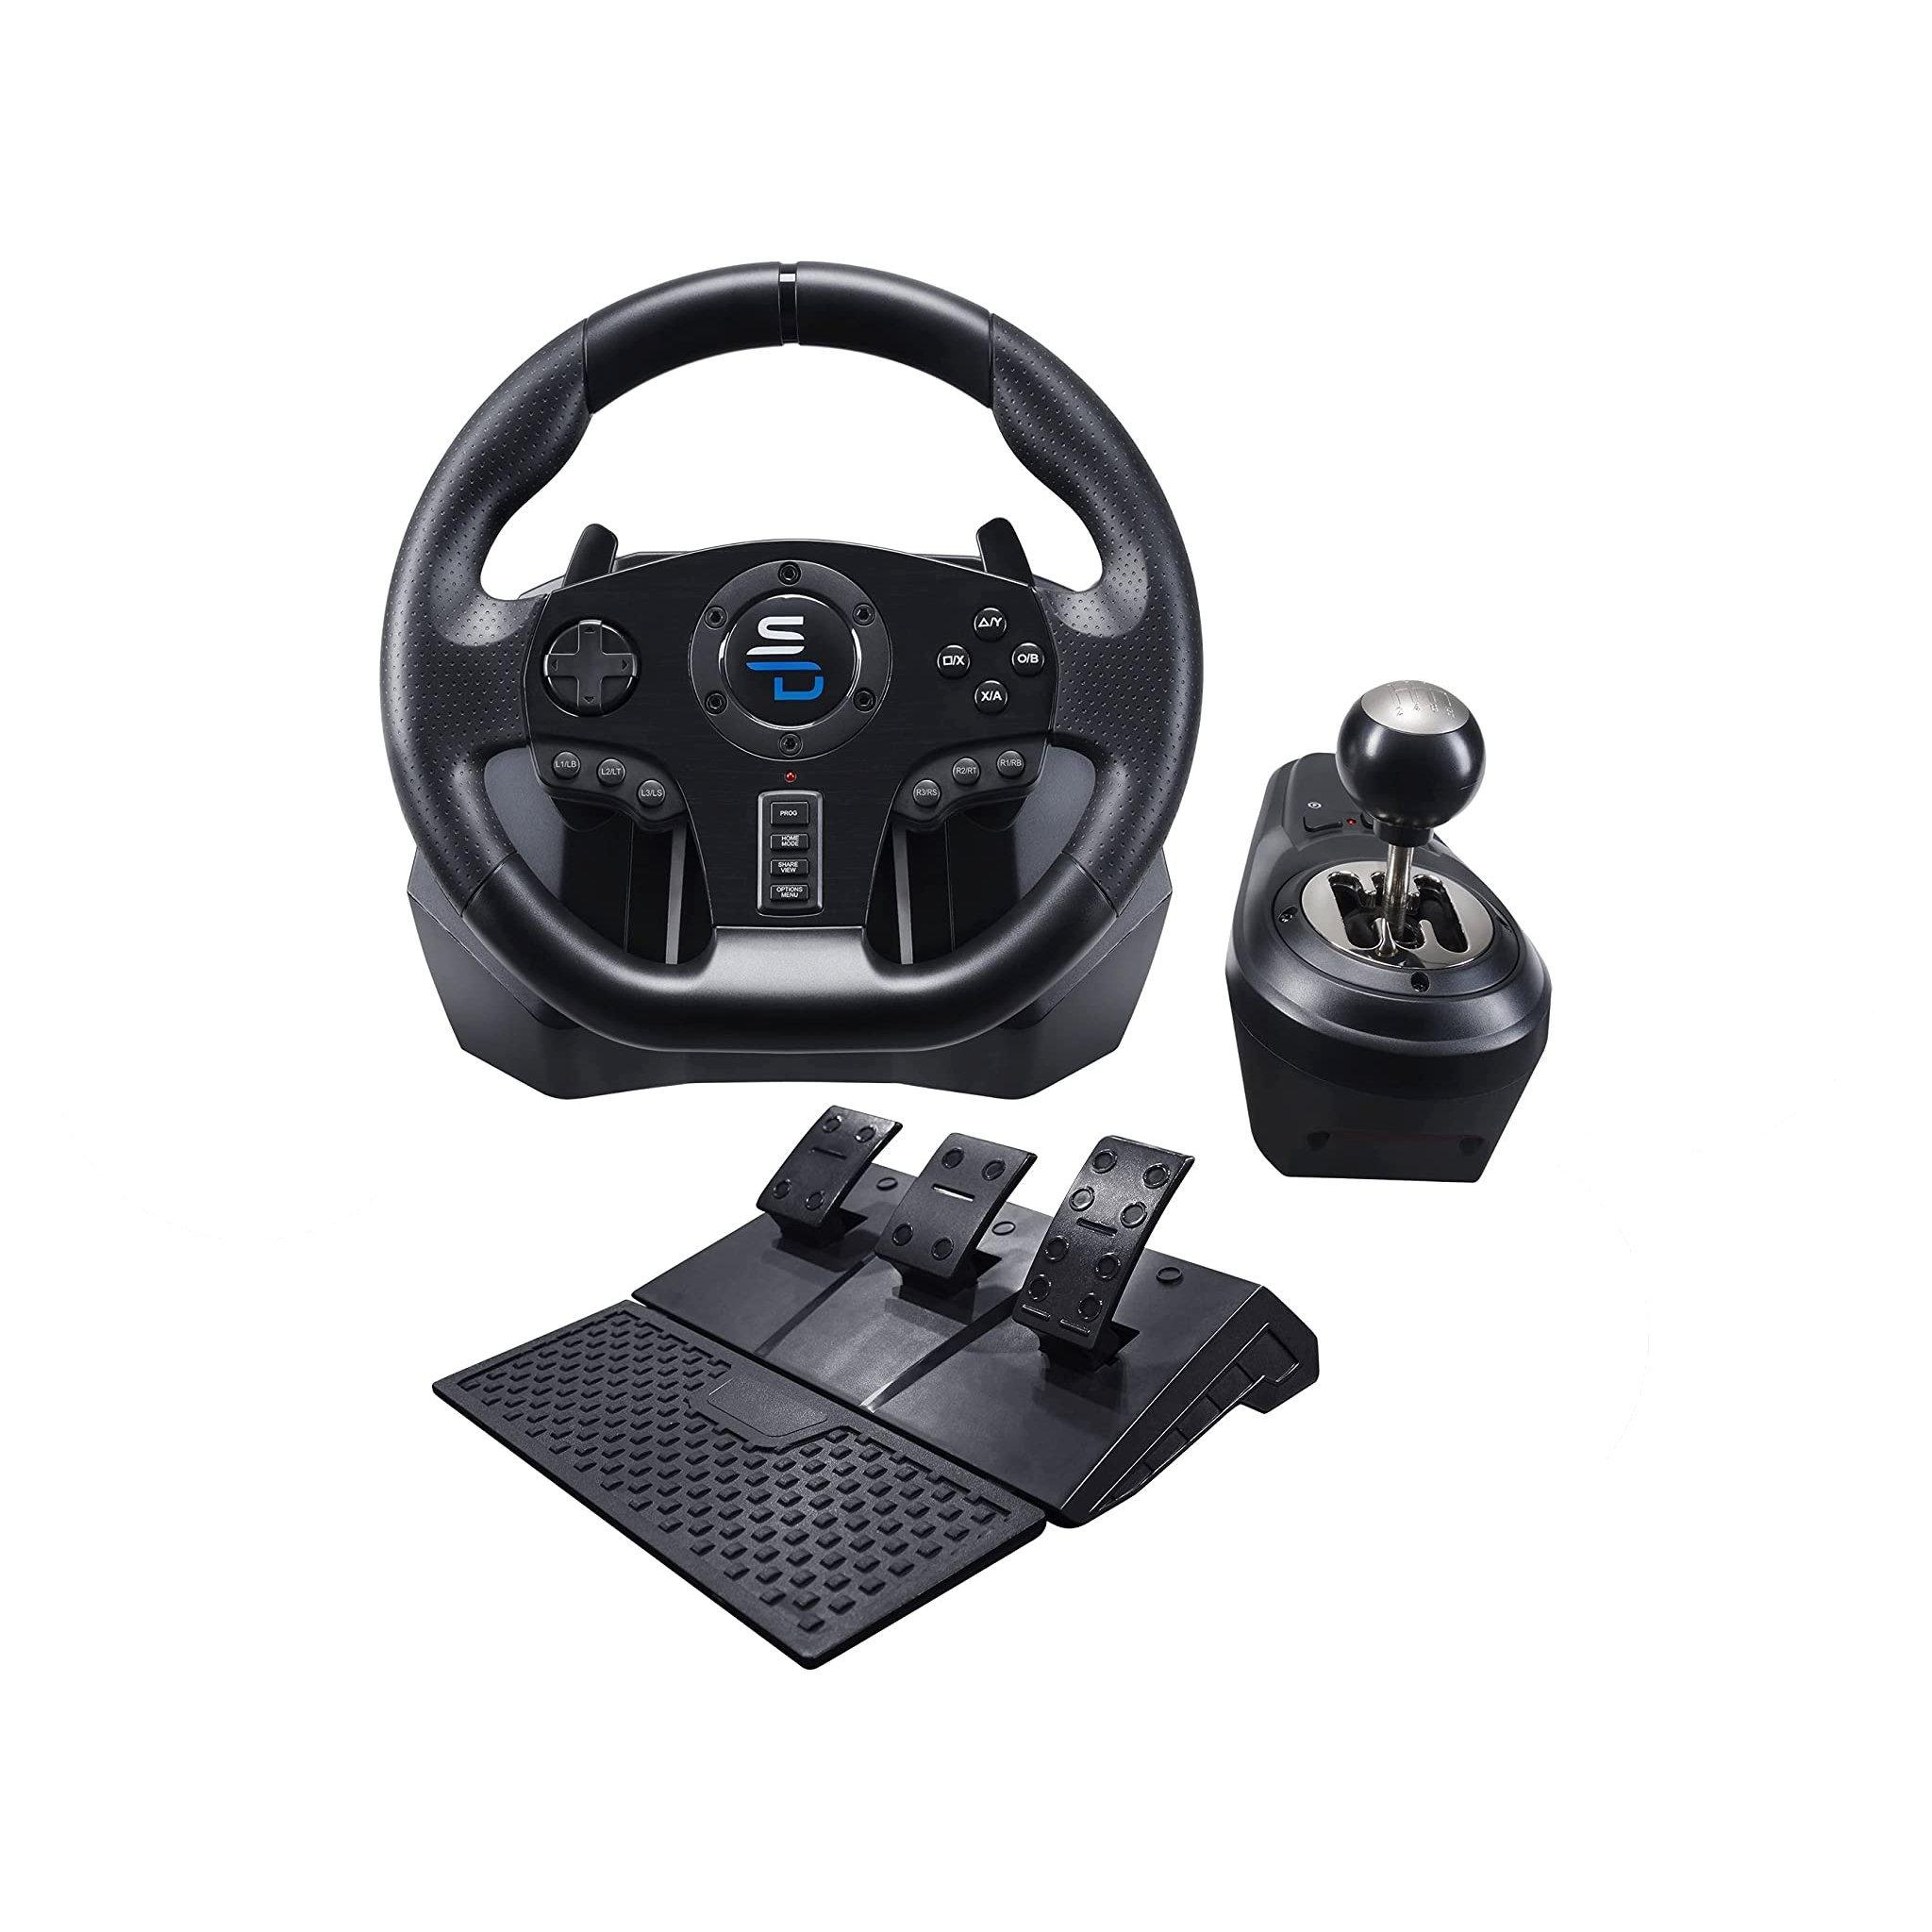 GS850-X Racing Gaming Steering Wheel